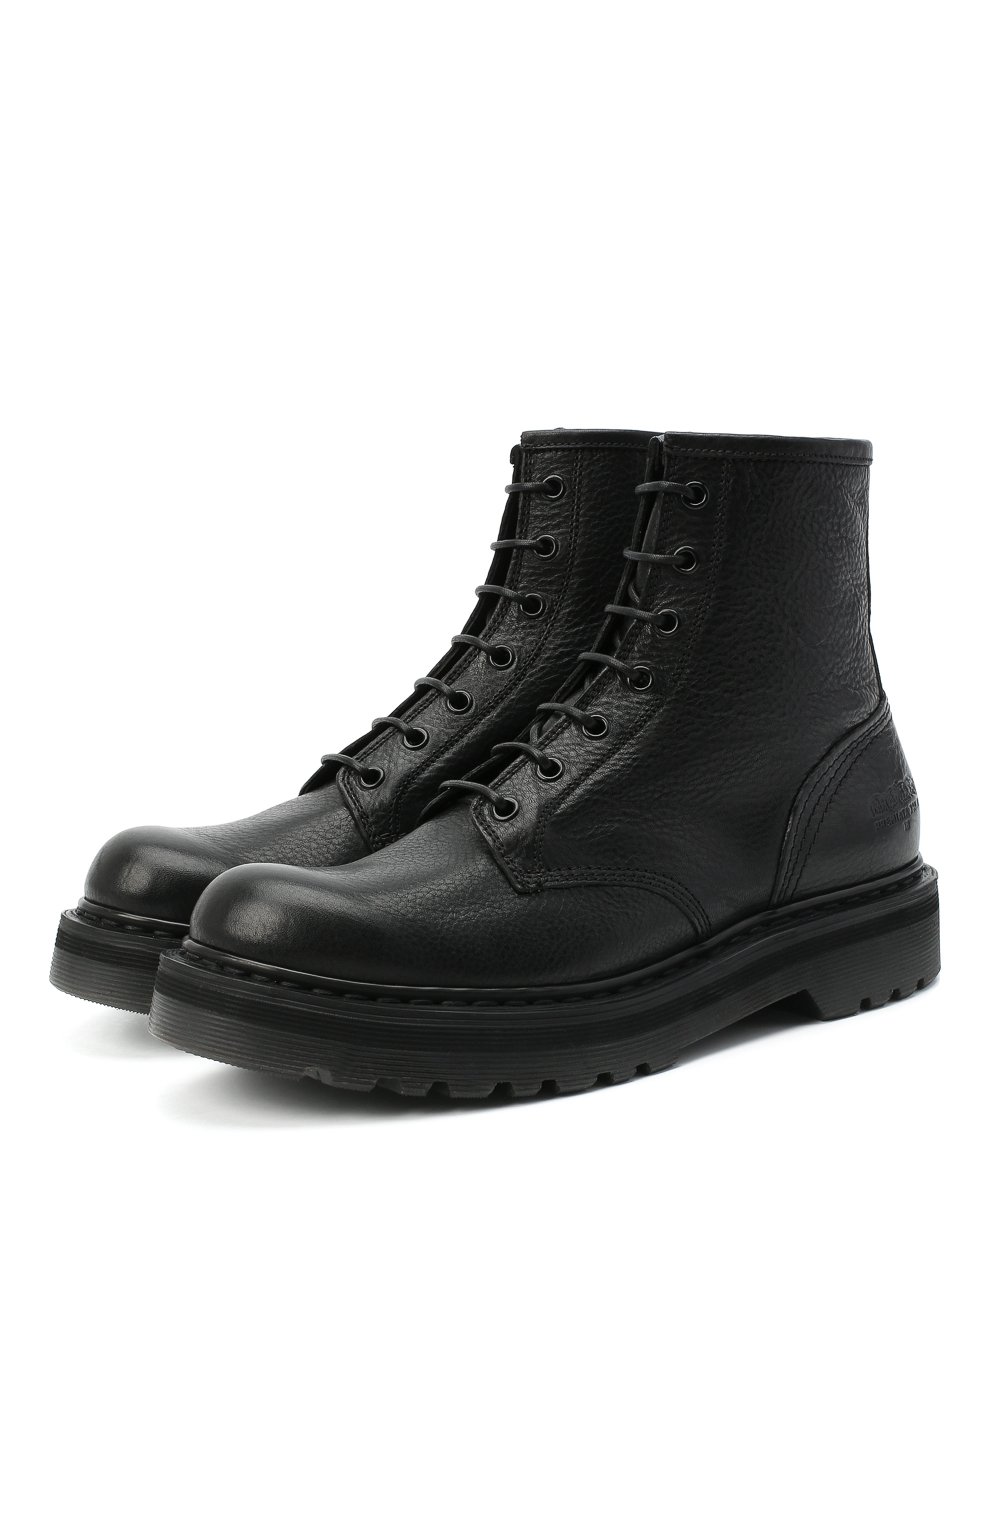 Кожаные ботинки Premiata M4973/V0LANAT0, цвет чёрный, размер 39